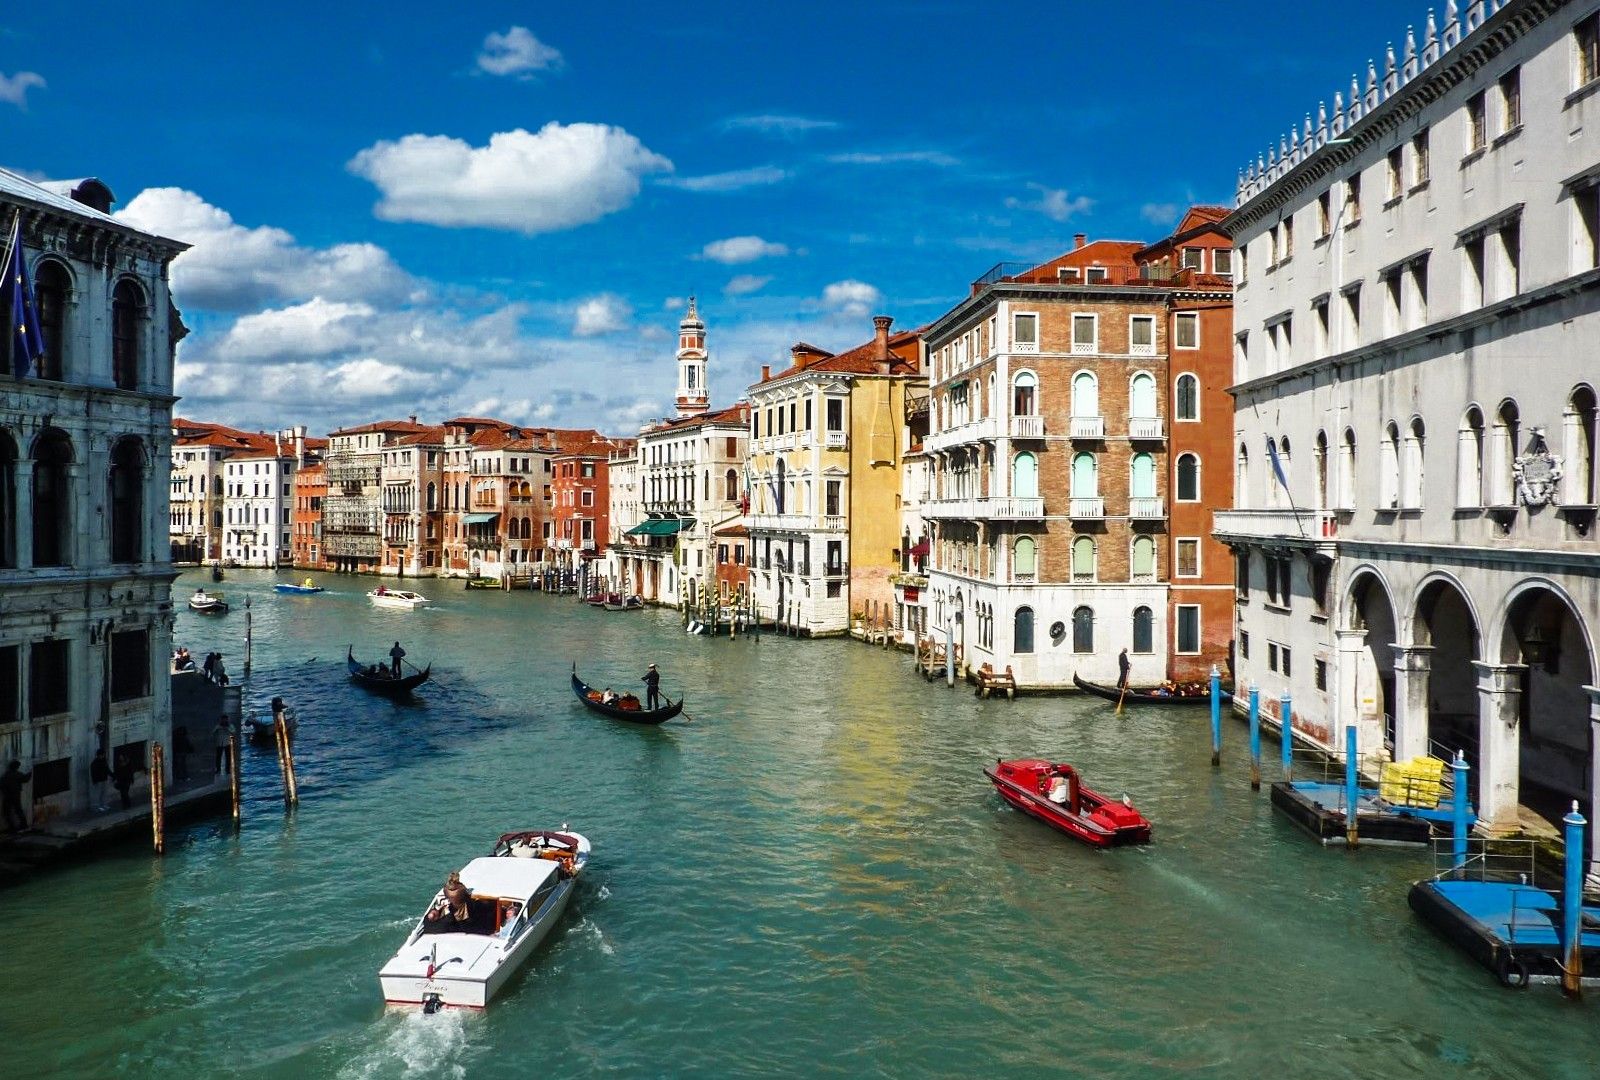 意大利威尼斯城市图片高清壁纸-壁纸图片大全